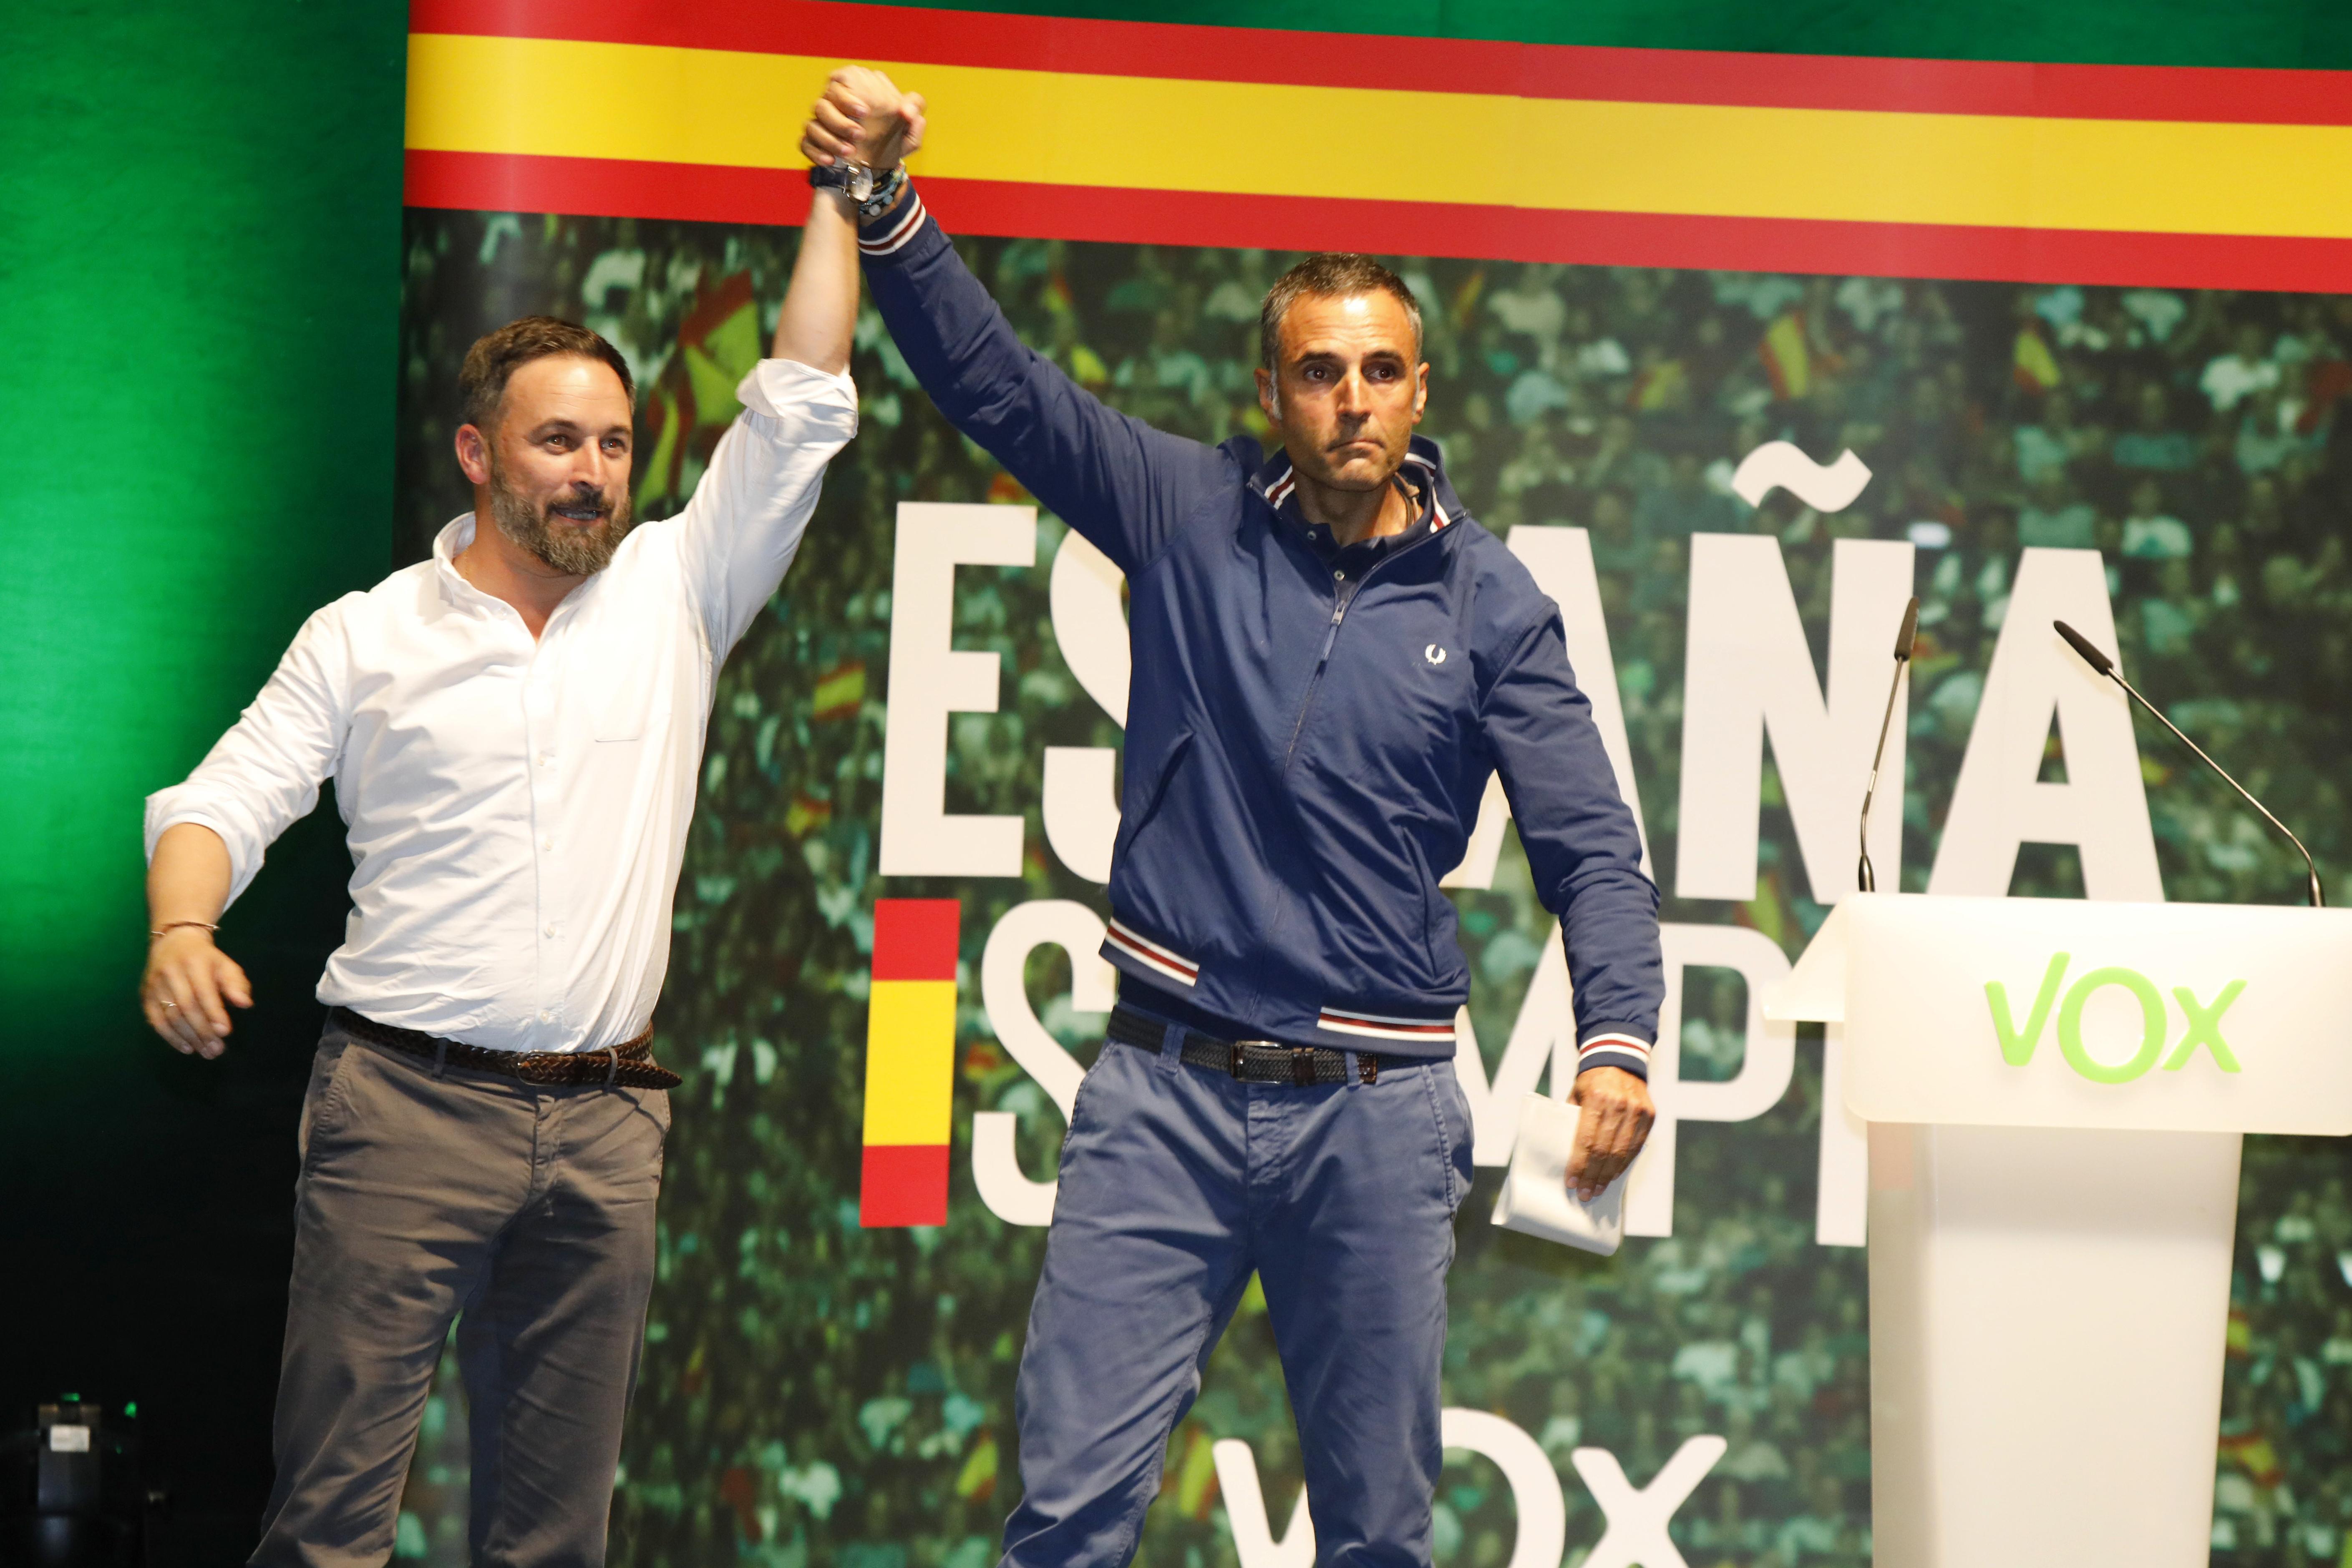 El presidente de Vox, Santiago Abascal, protagoniza un acto público en el Palacio de Congresos de Albacete junto al diputado Rafa Fernández-Lomana